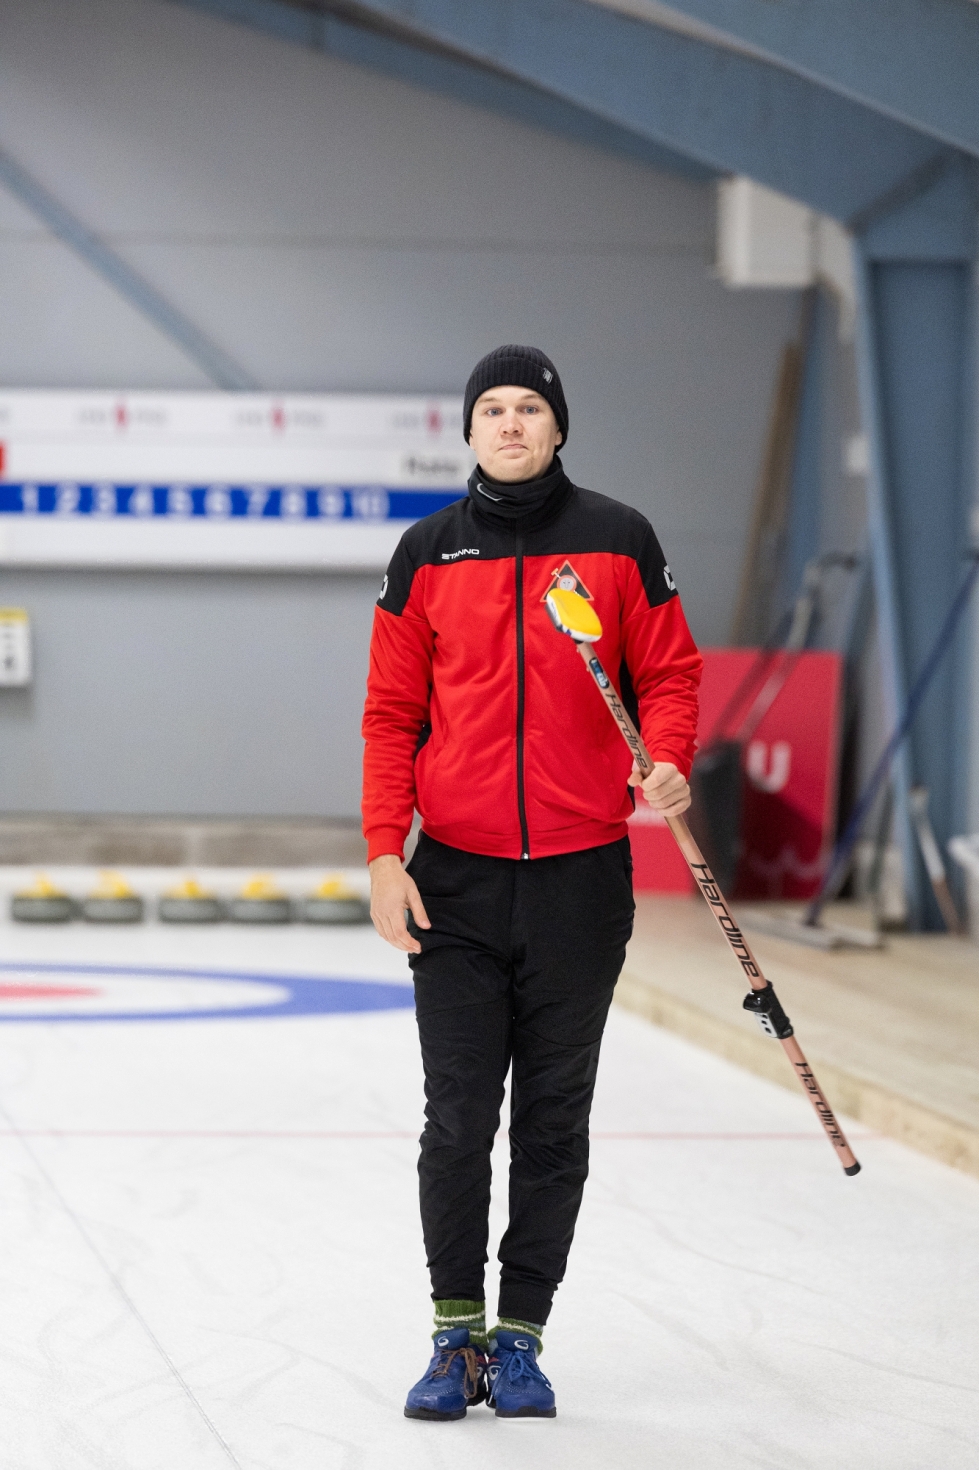 Matias Hännisen curling-joukkue voi voittaa SM-kultaa kotiturnauksessa Joensuussa maaliskuussa.